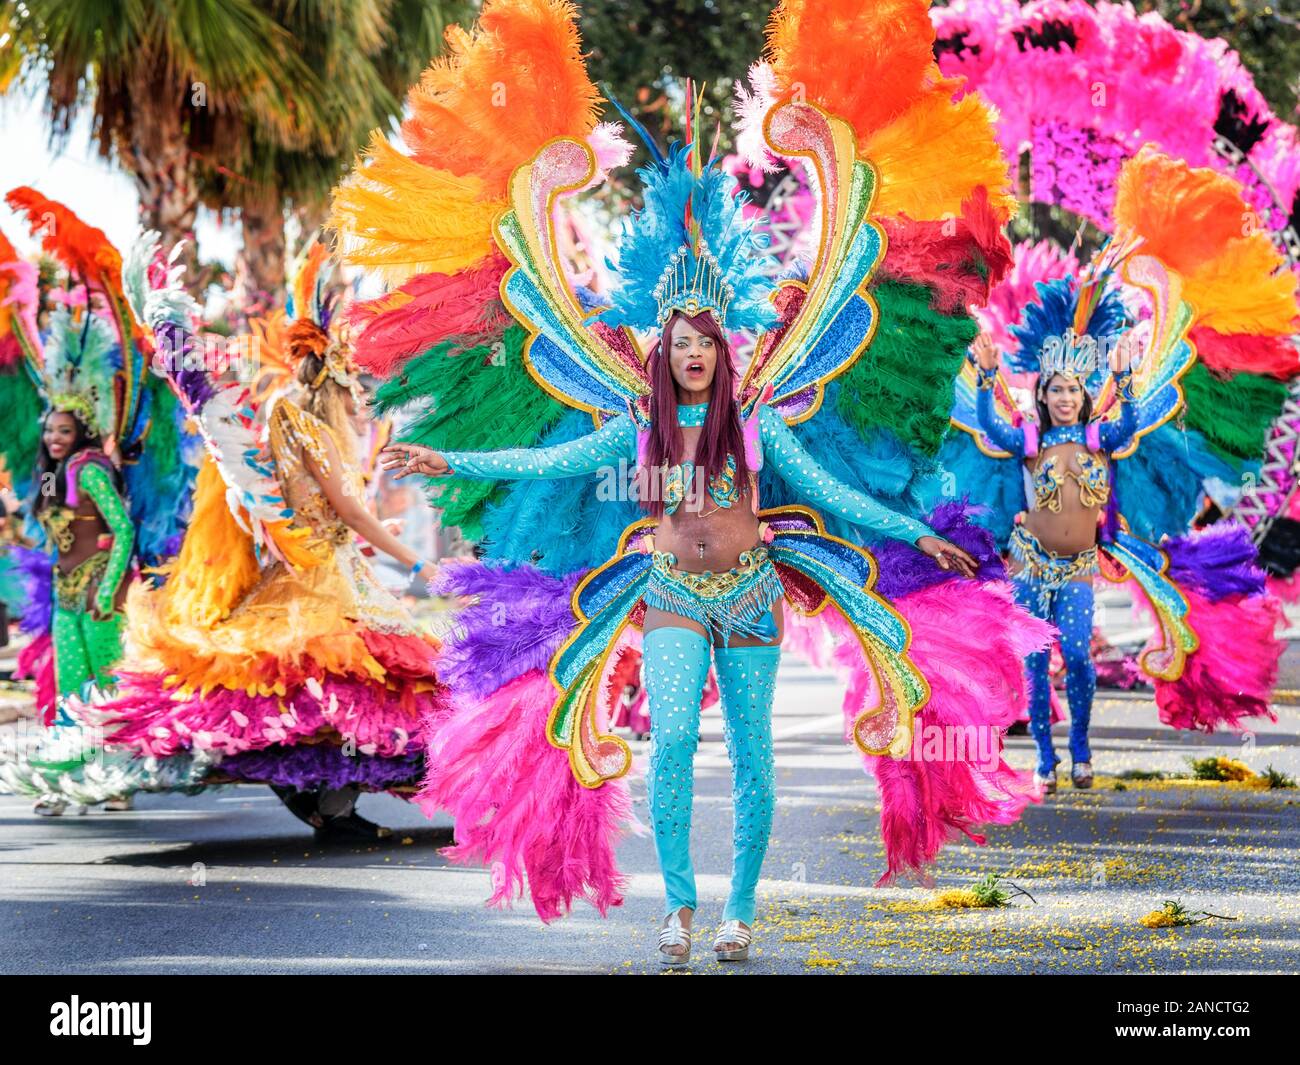 Darsteller in farbenfrohem Kostüm auf der Flower Parade, Nice Carnival, French Riviera, Cote d'Azur, Frankreich. Stockfoto